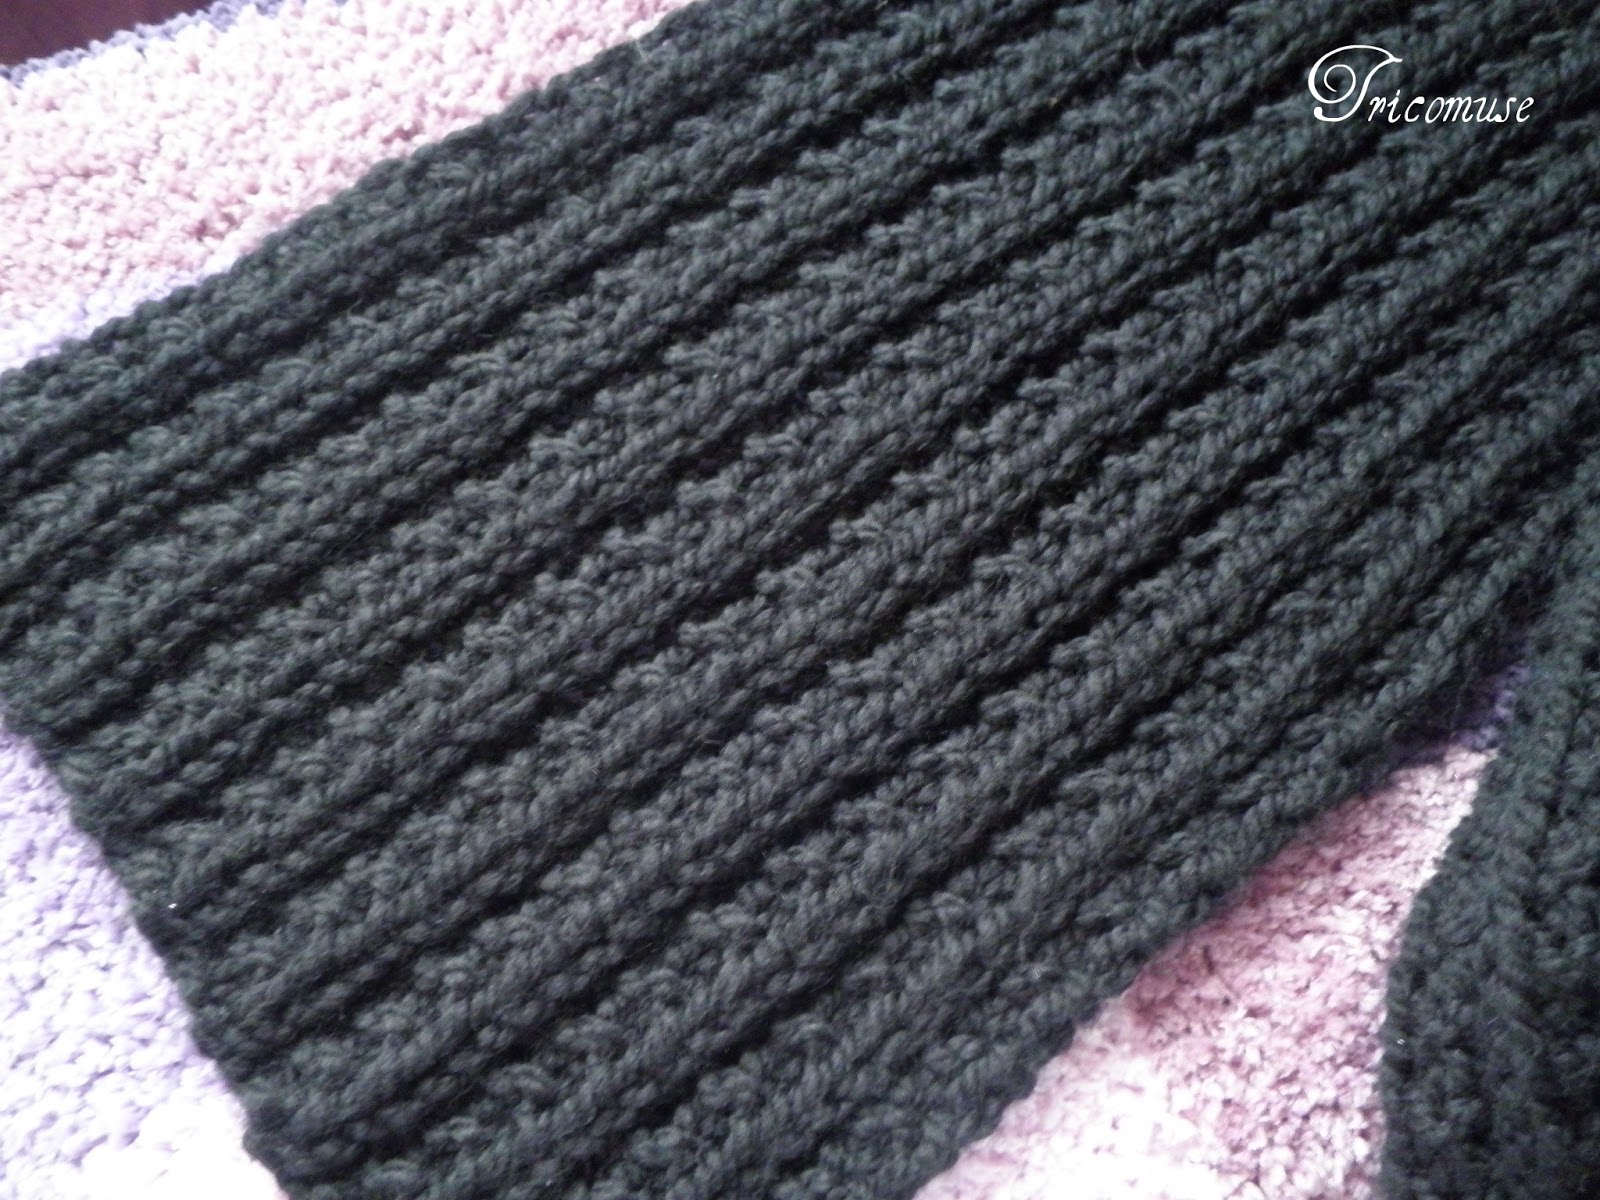 tricoter une echarpe aiguille 12